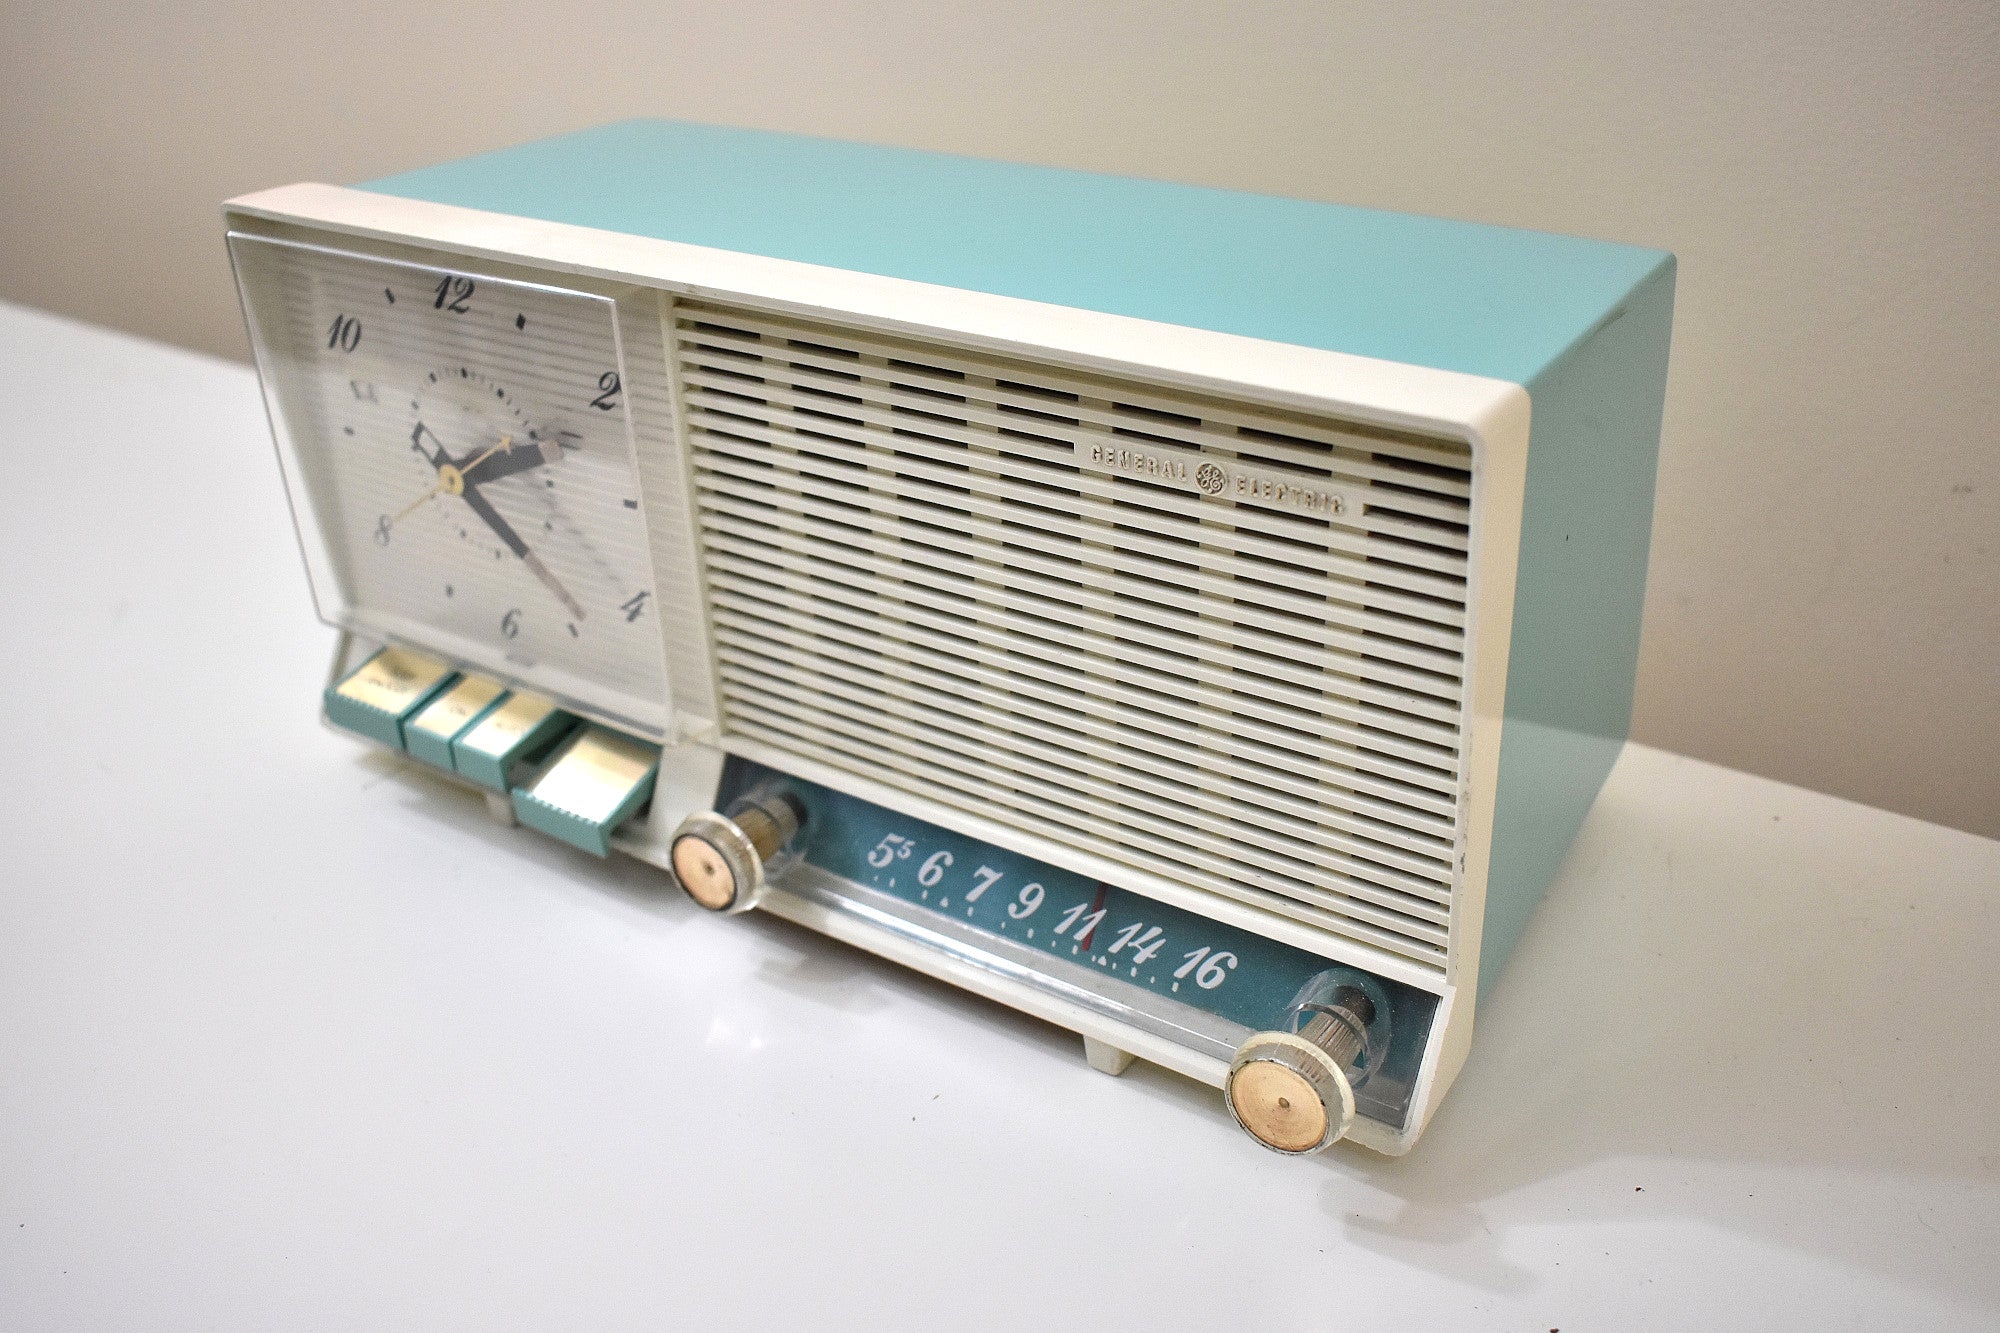 シーフォーム ターコイズ 1960 GE ゼネラル エレクトリック モデル C-427A AM ヴィンテージ ラジオ 50 年代後半の機能満載!